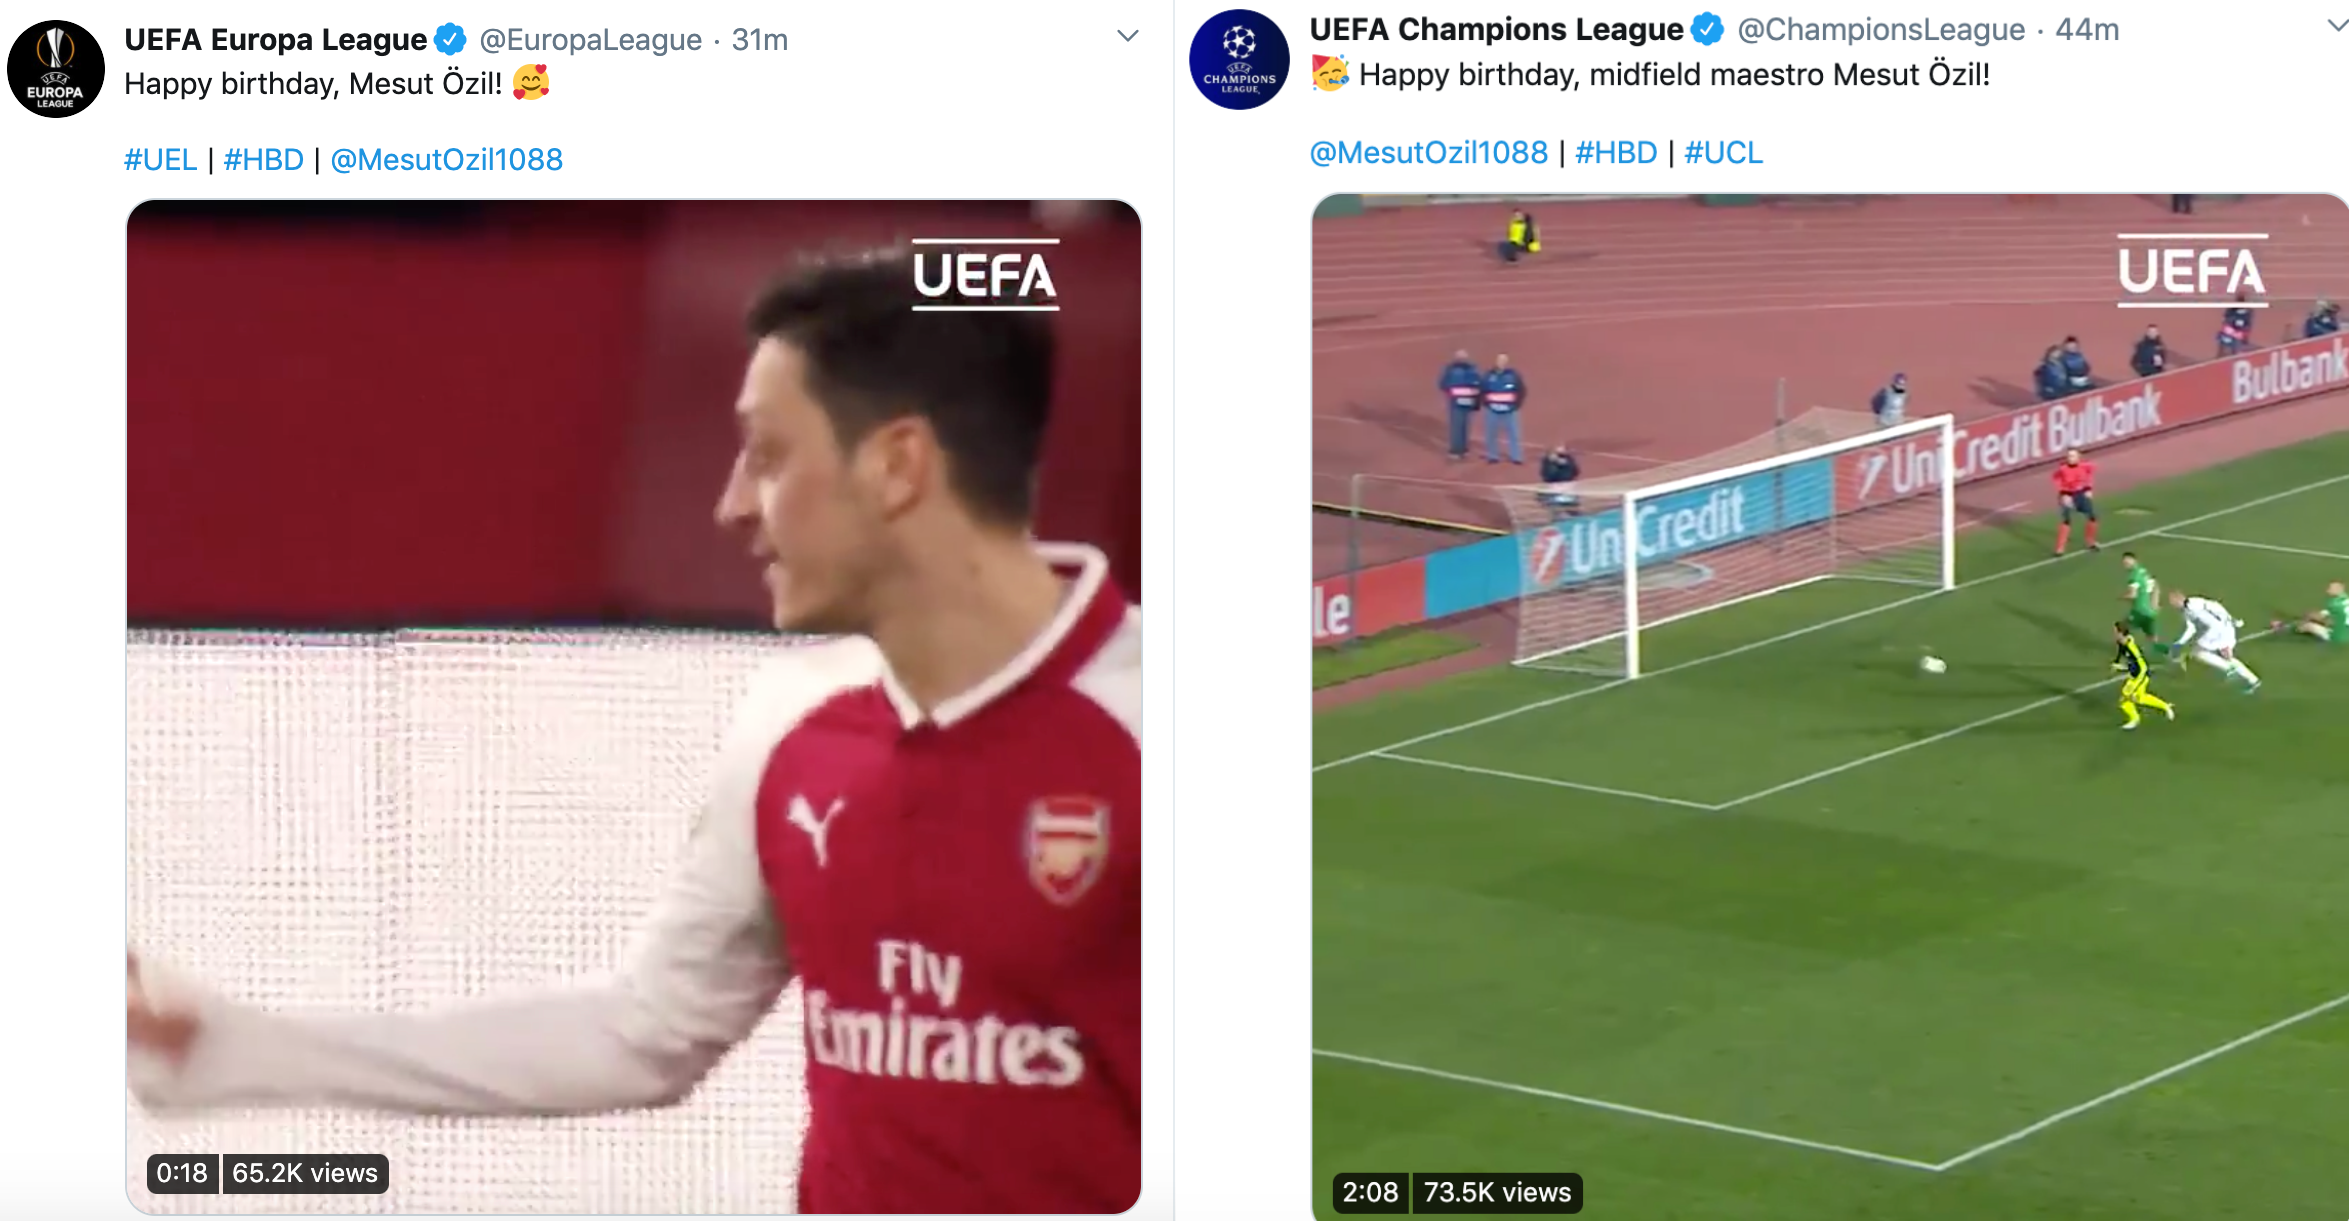 Arsenal mừng sinh nhật Mesut Ozil nhưng đăng ảnh như đưa đám hình ảnh